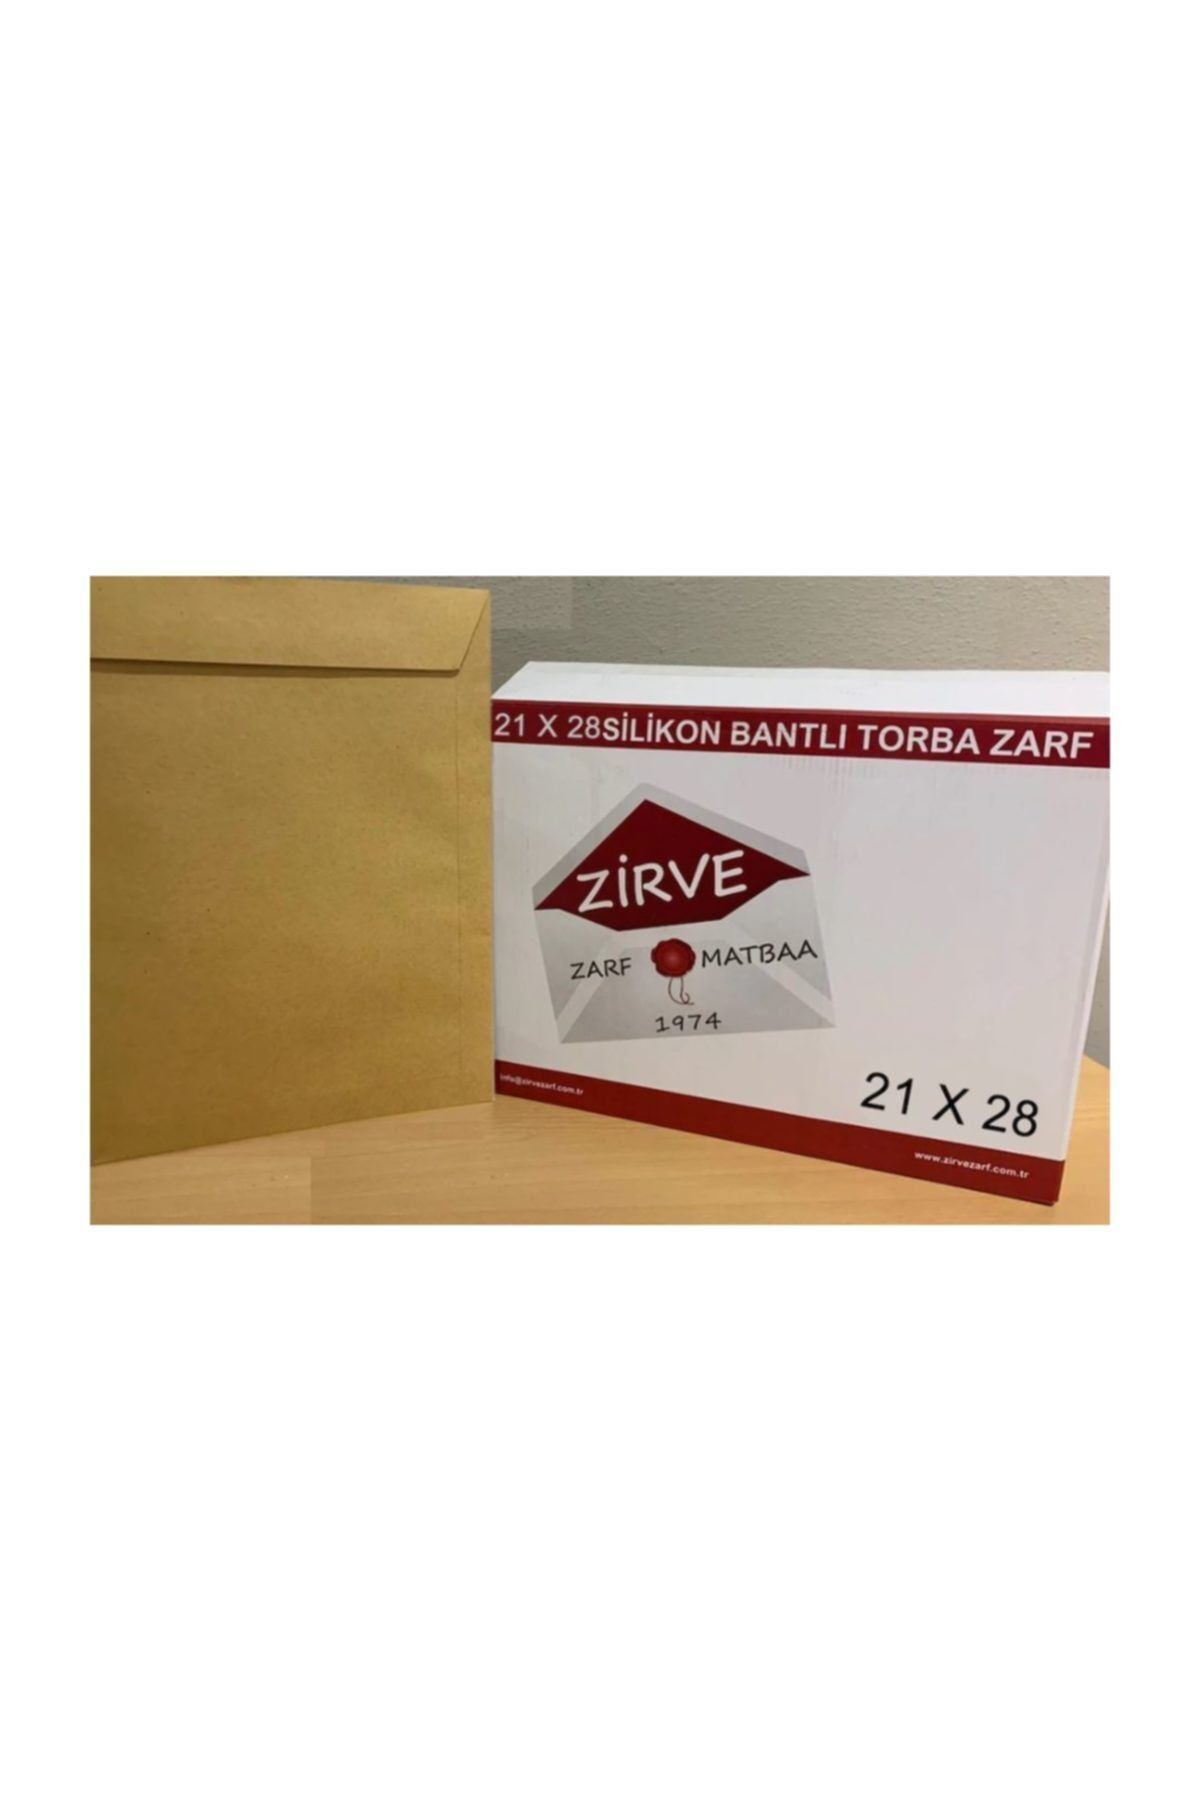 Zirve Zarf Torba Zarf 21x28 100 Gram Formula Silikonlu 250 Adet